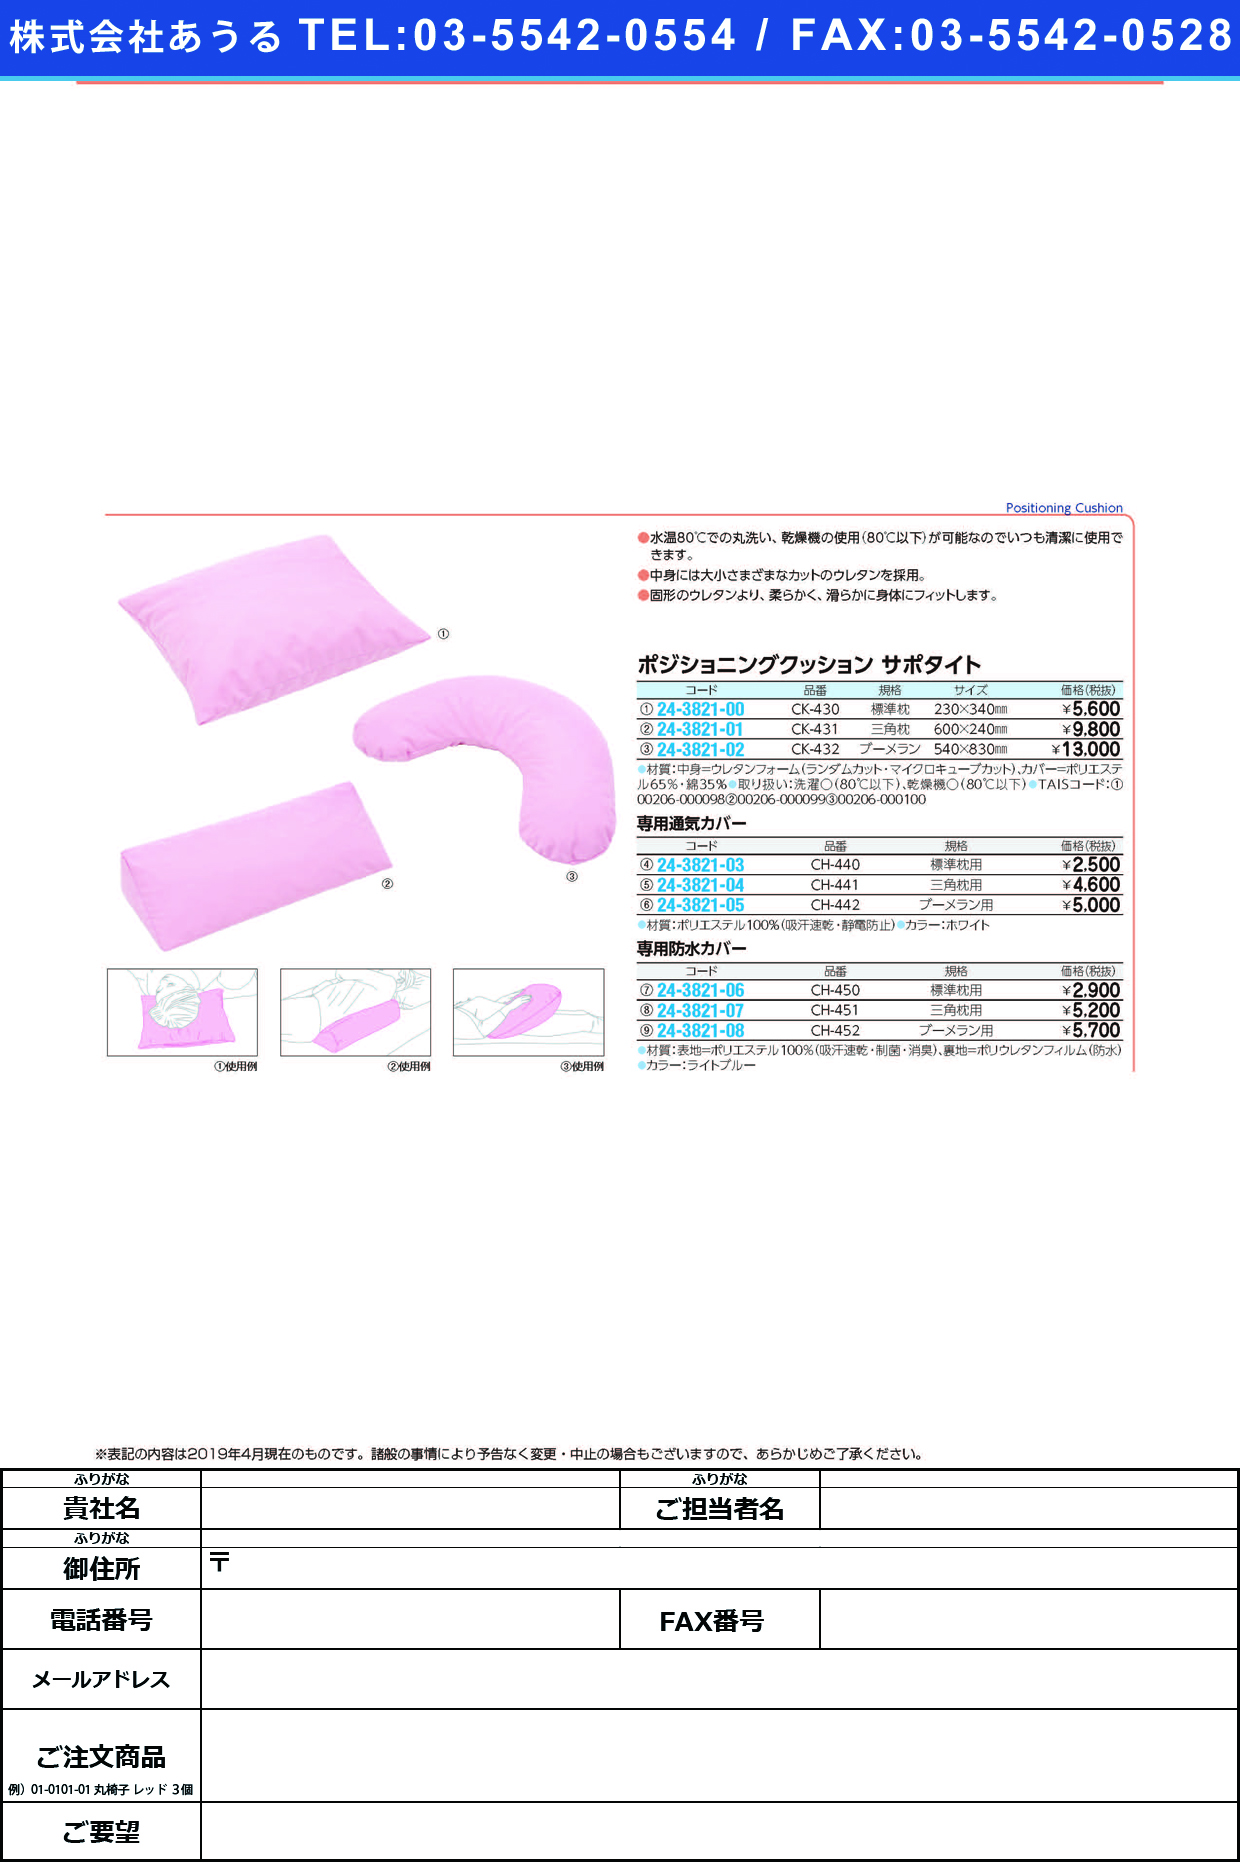 (24-3821-05)サポタイト用通気カバー CH-442(ﾌﾞｰﾒﾗﾝﾖｳ) ｻﾎﾟﾀｲﾄﾖｳﾂｳｷｶﾊﾞｰ(ケープ)【1個単位】【2019年カタログ商品】